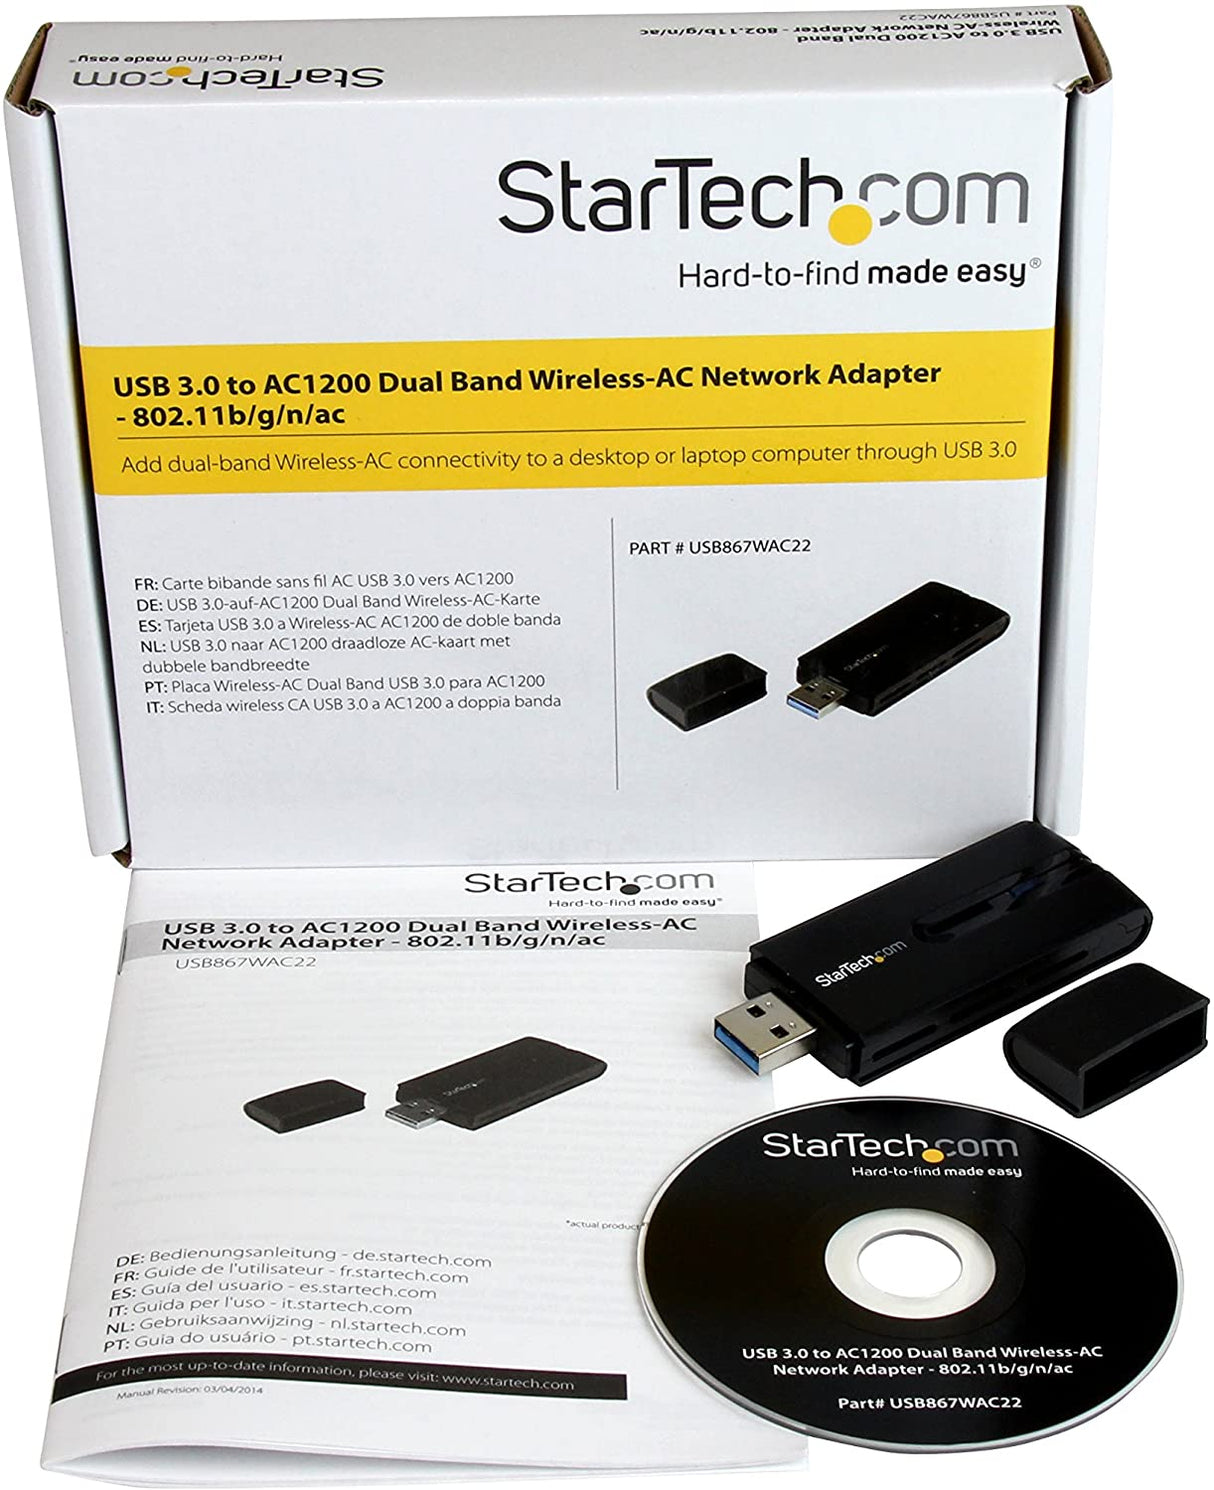 StarTech.com USB 3.0 AC1200 Dual Band Wireless-AC Network Adapter - 802.11ac WiFi Adapter - 2.4GHz / 5GHz USB Wireless - AC Network Card (USB867WAC22), Black